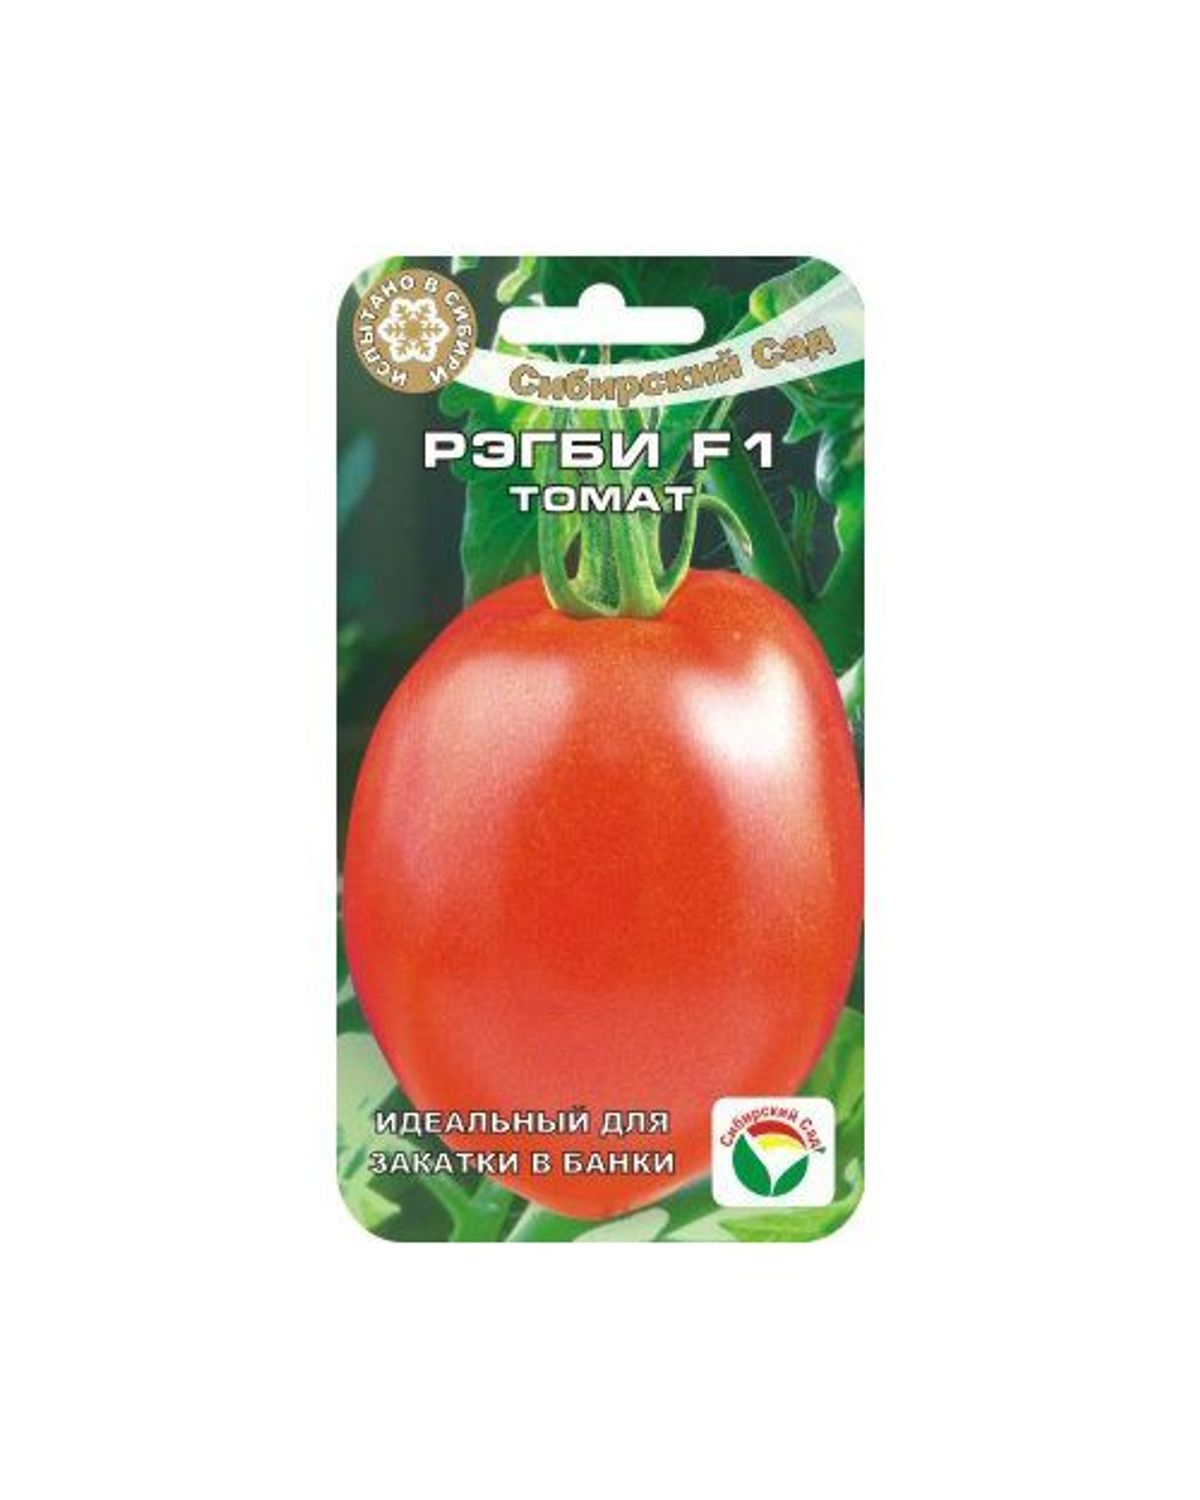 фото Семена овощей томат регби f1 сибирский сад нк030618 1,5 г